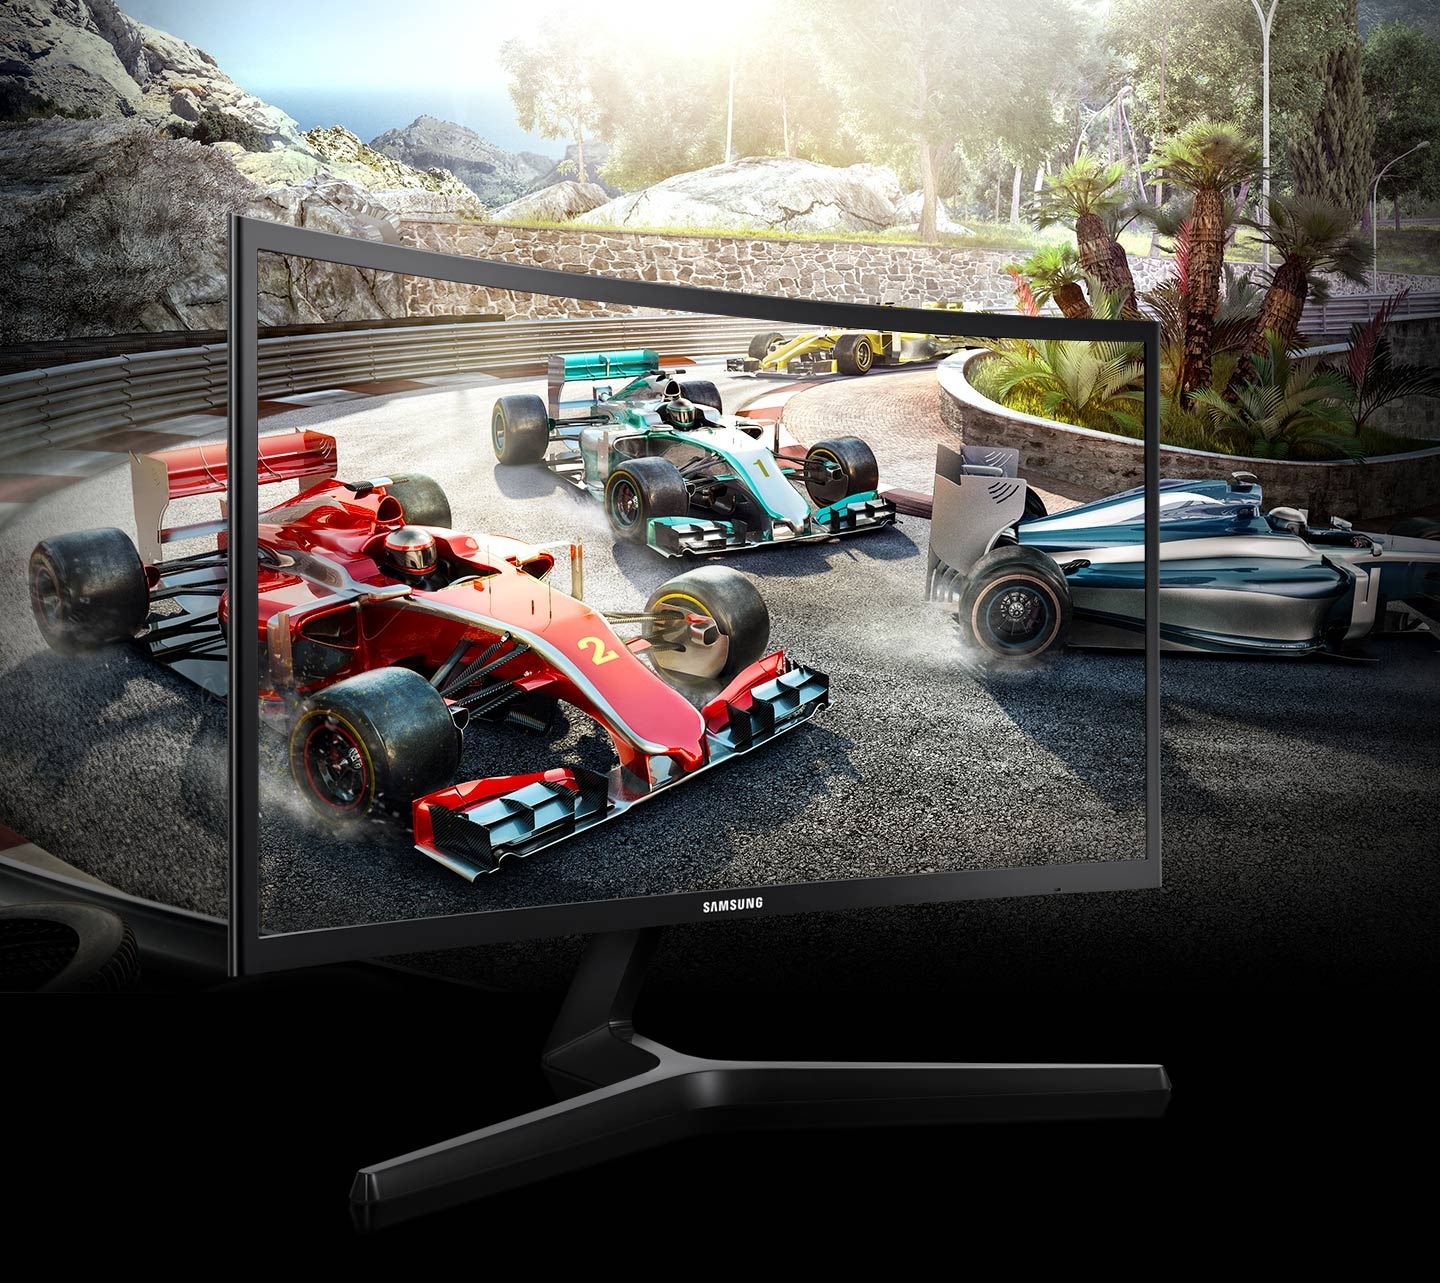 Écran gaming incurvé 24 Full HD Samsung (LC24RG50FZMXZN)